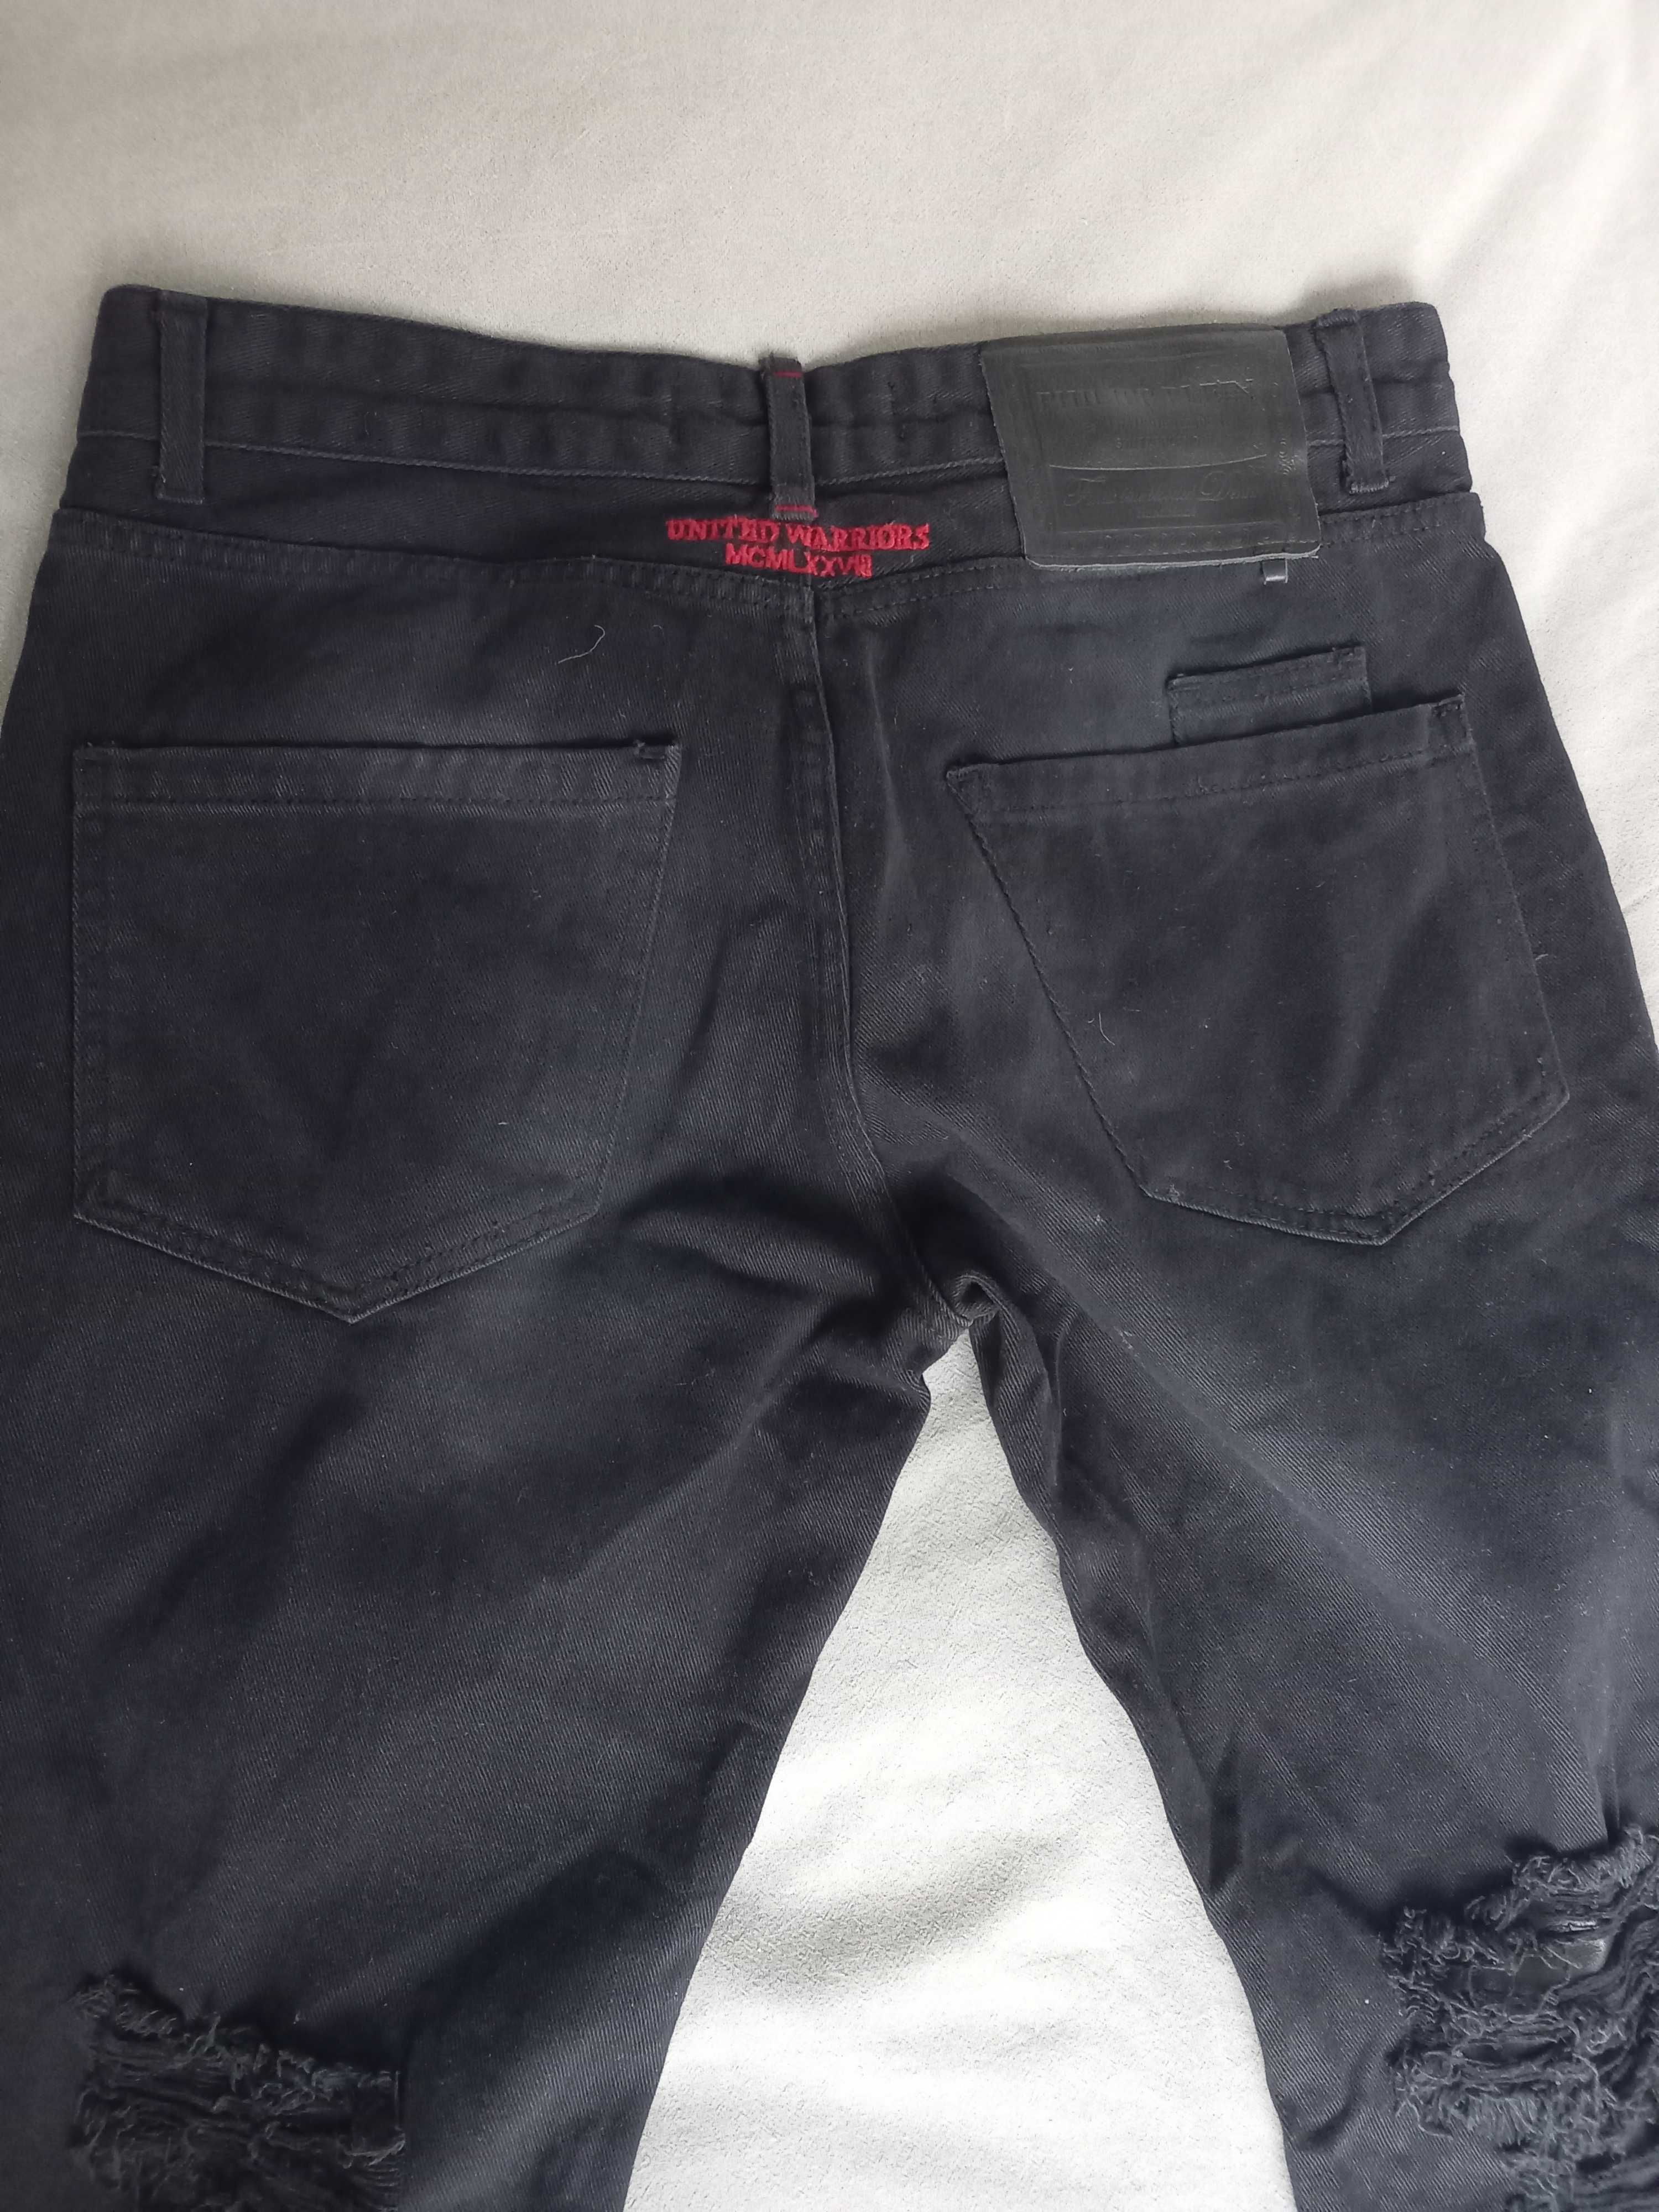 Philipp plein jeans - ръчно изработени дънки за ценители!